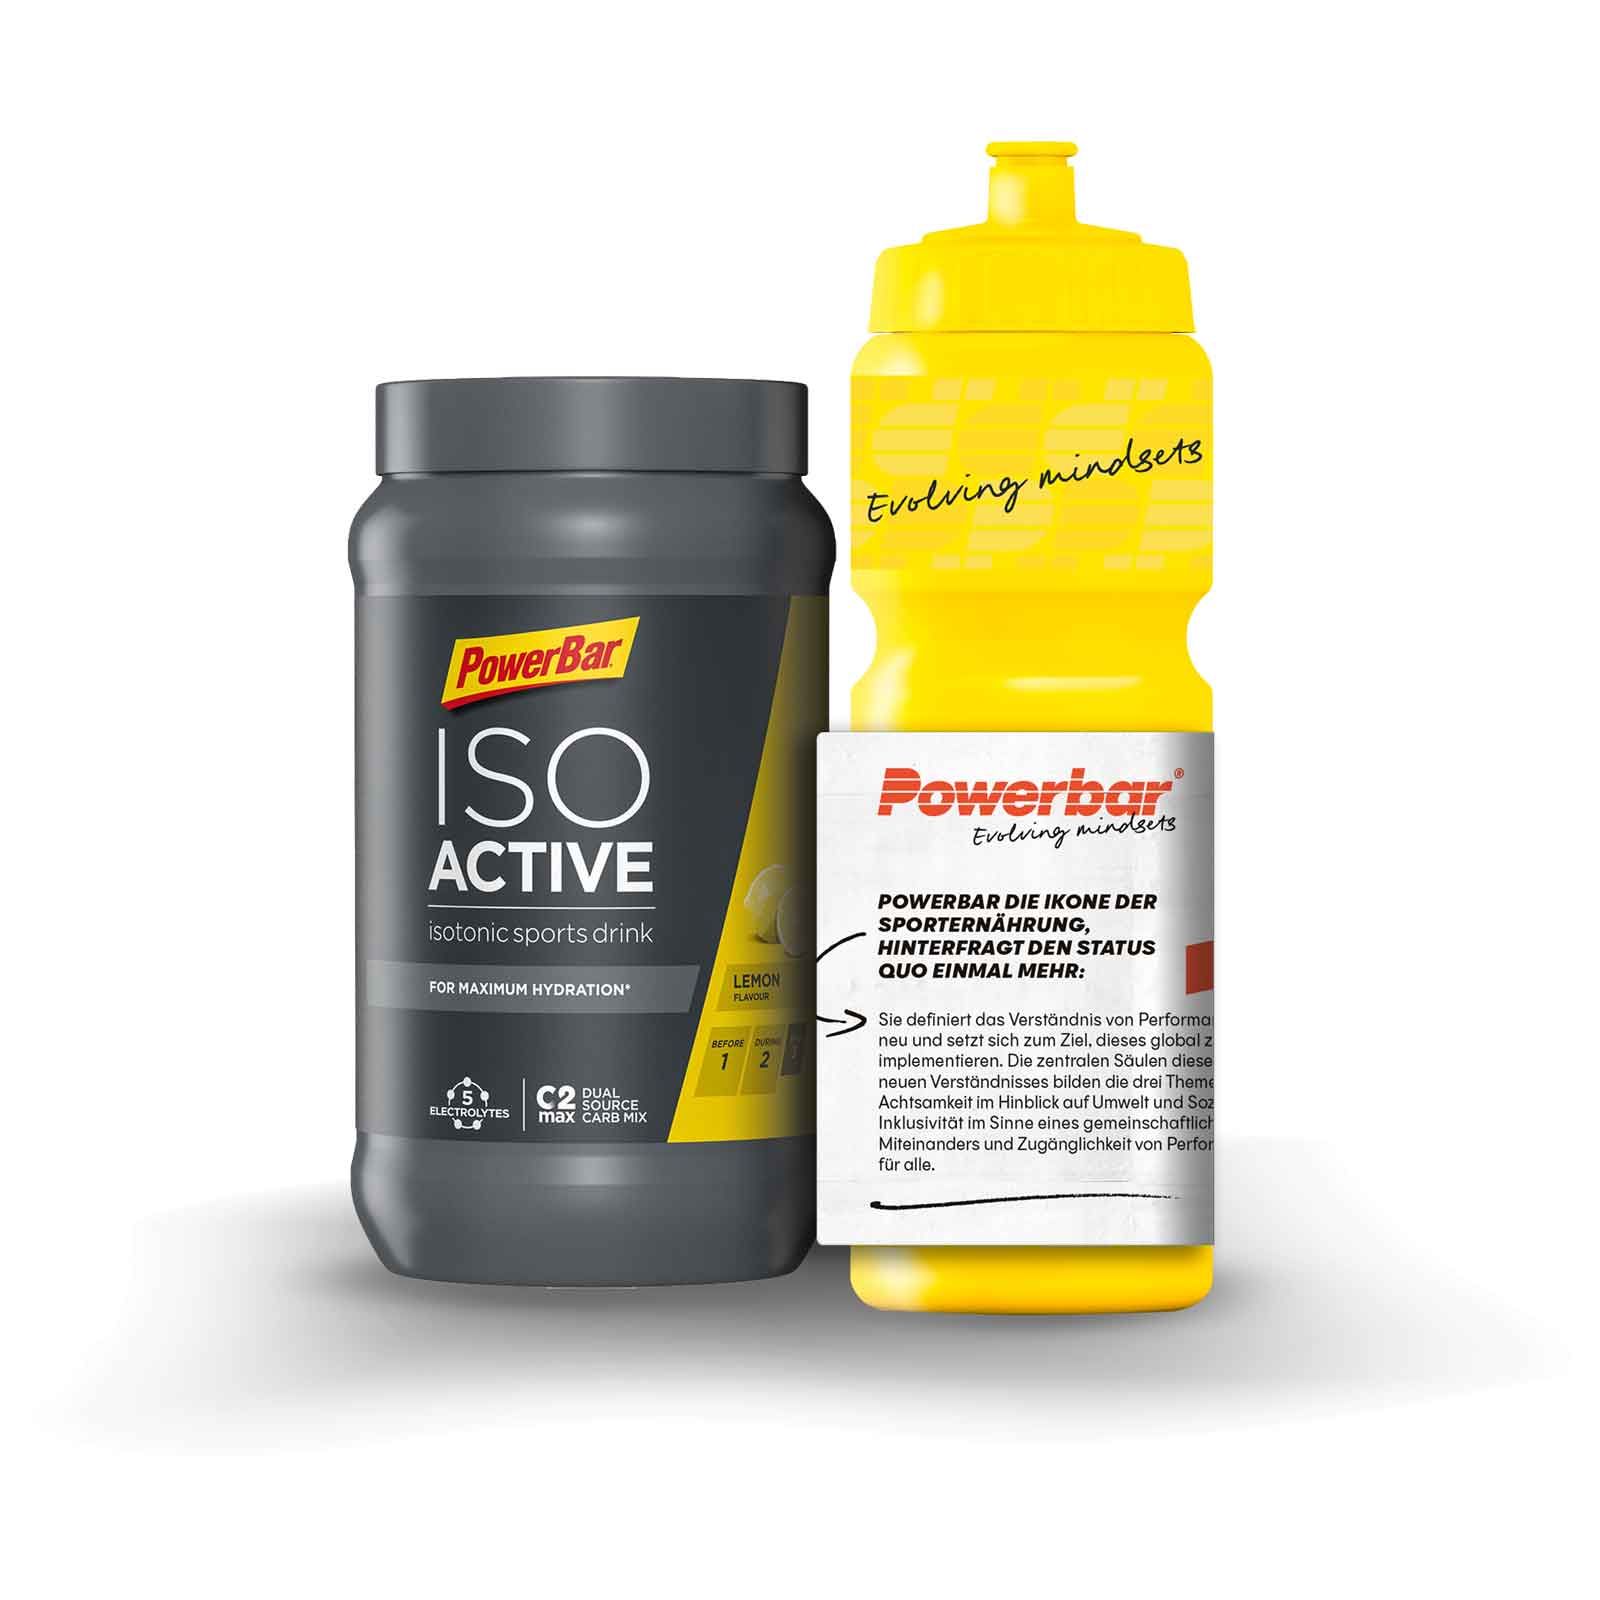 Produktbild von Powerbar IsoBottle OnPack - Isoactive Sports Drink 600g + Trinkflasche 750ml